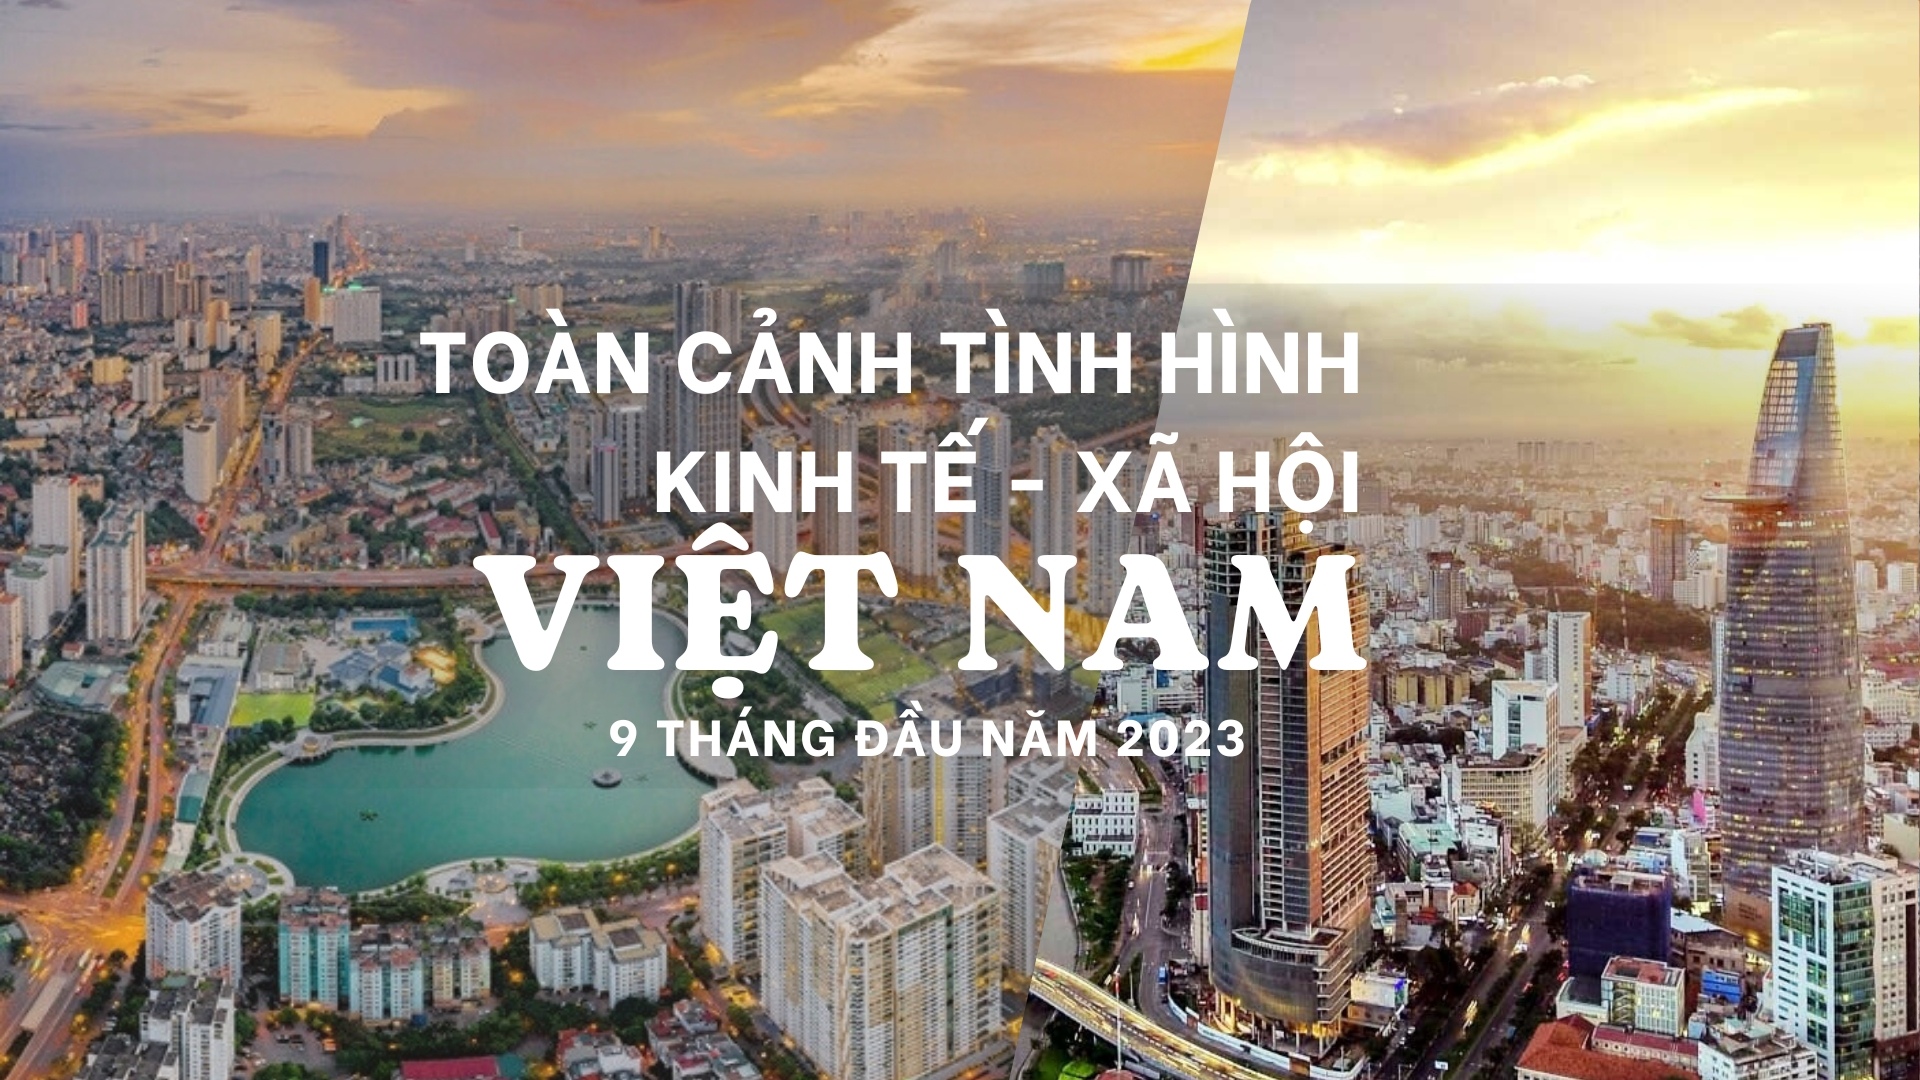 Cập nhật tình hình Kinh tế - Xã hội Việt Nam 9 tháng đầu năm 2023